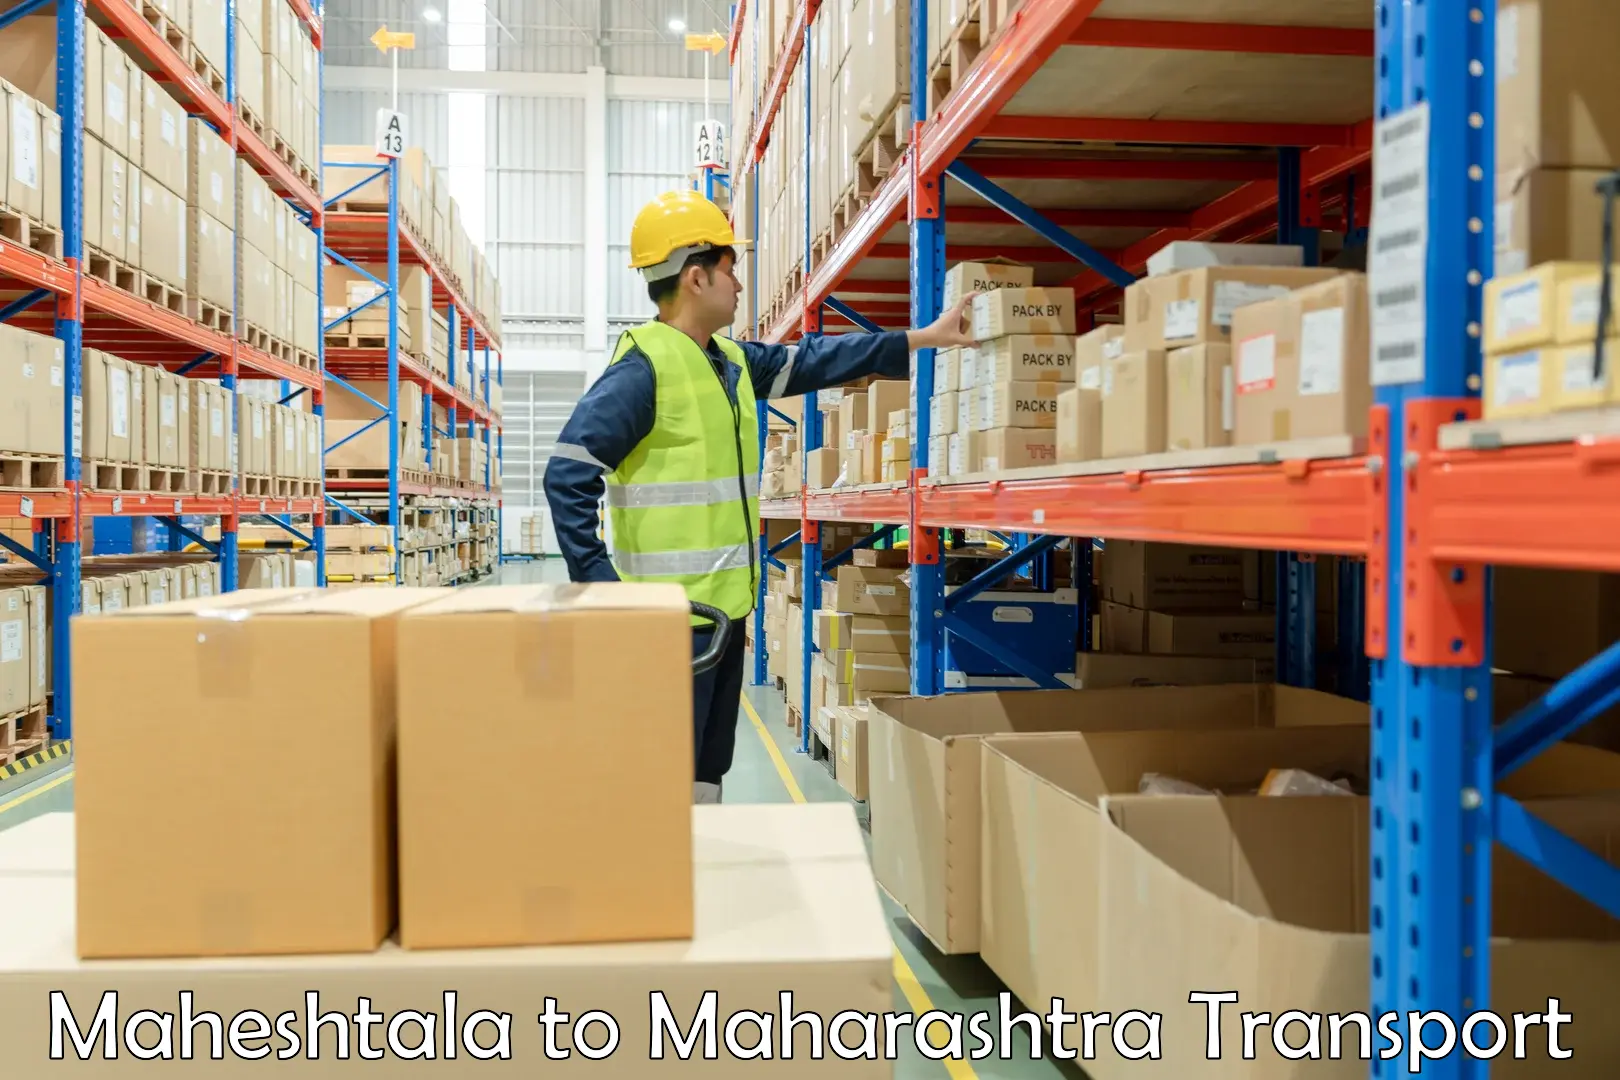 Furniture transport service Maheshtala to Sironcha